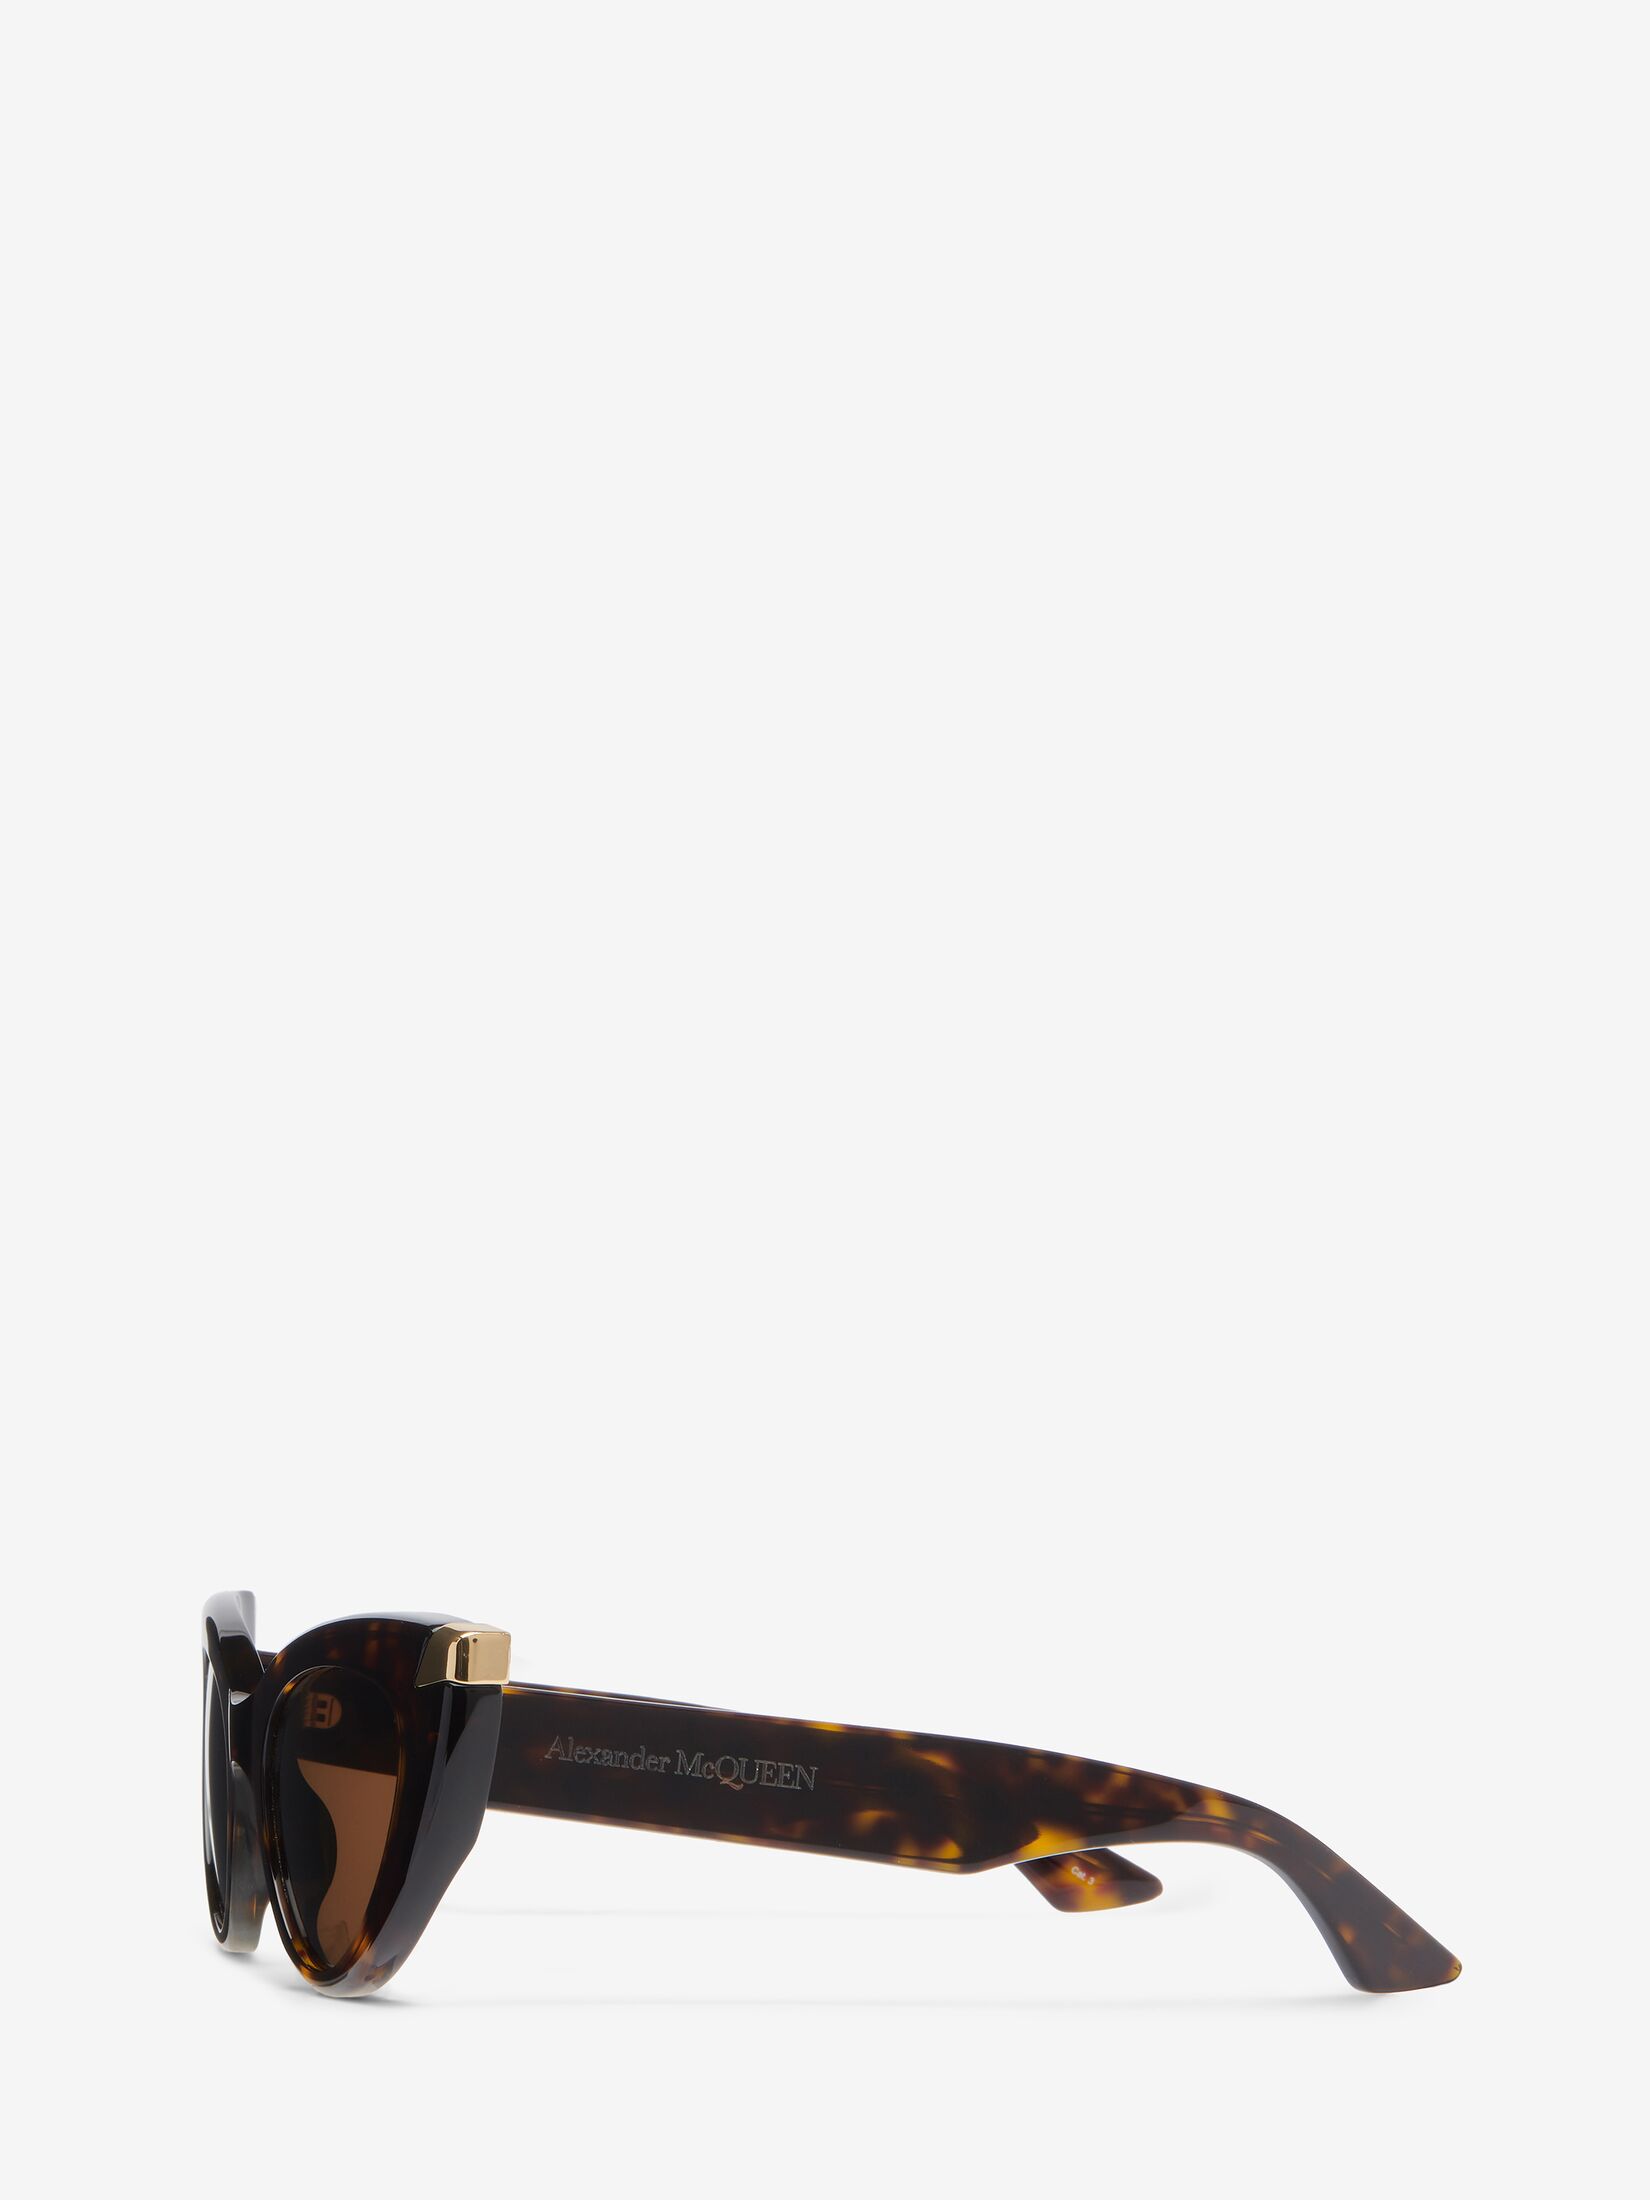 Cateye-Sonnenbrille mit Punk-Nieten